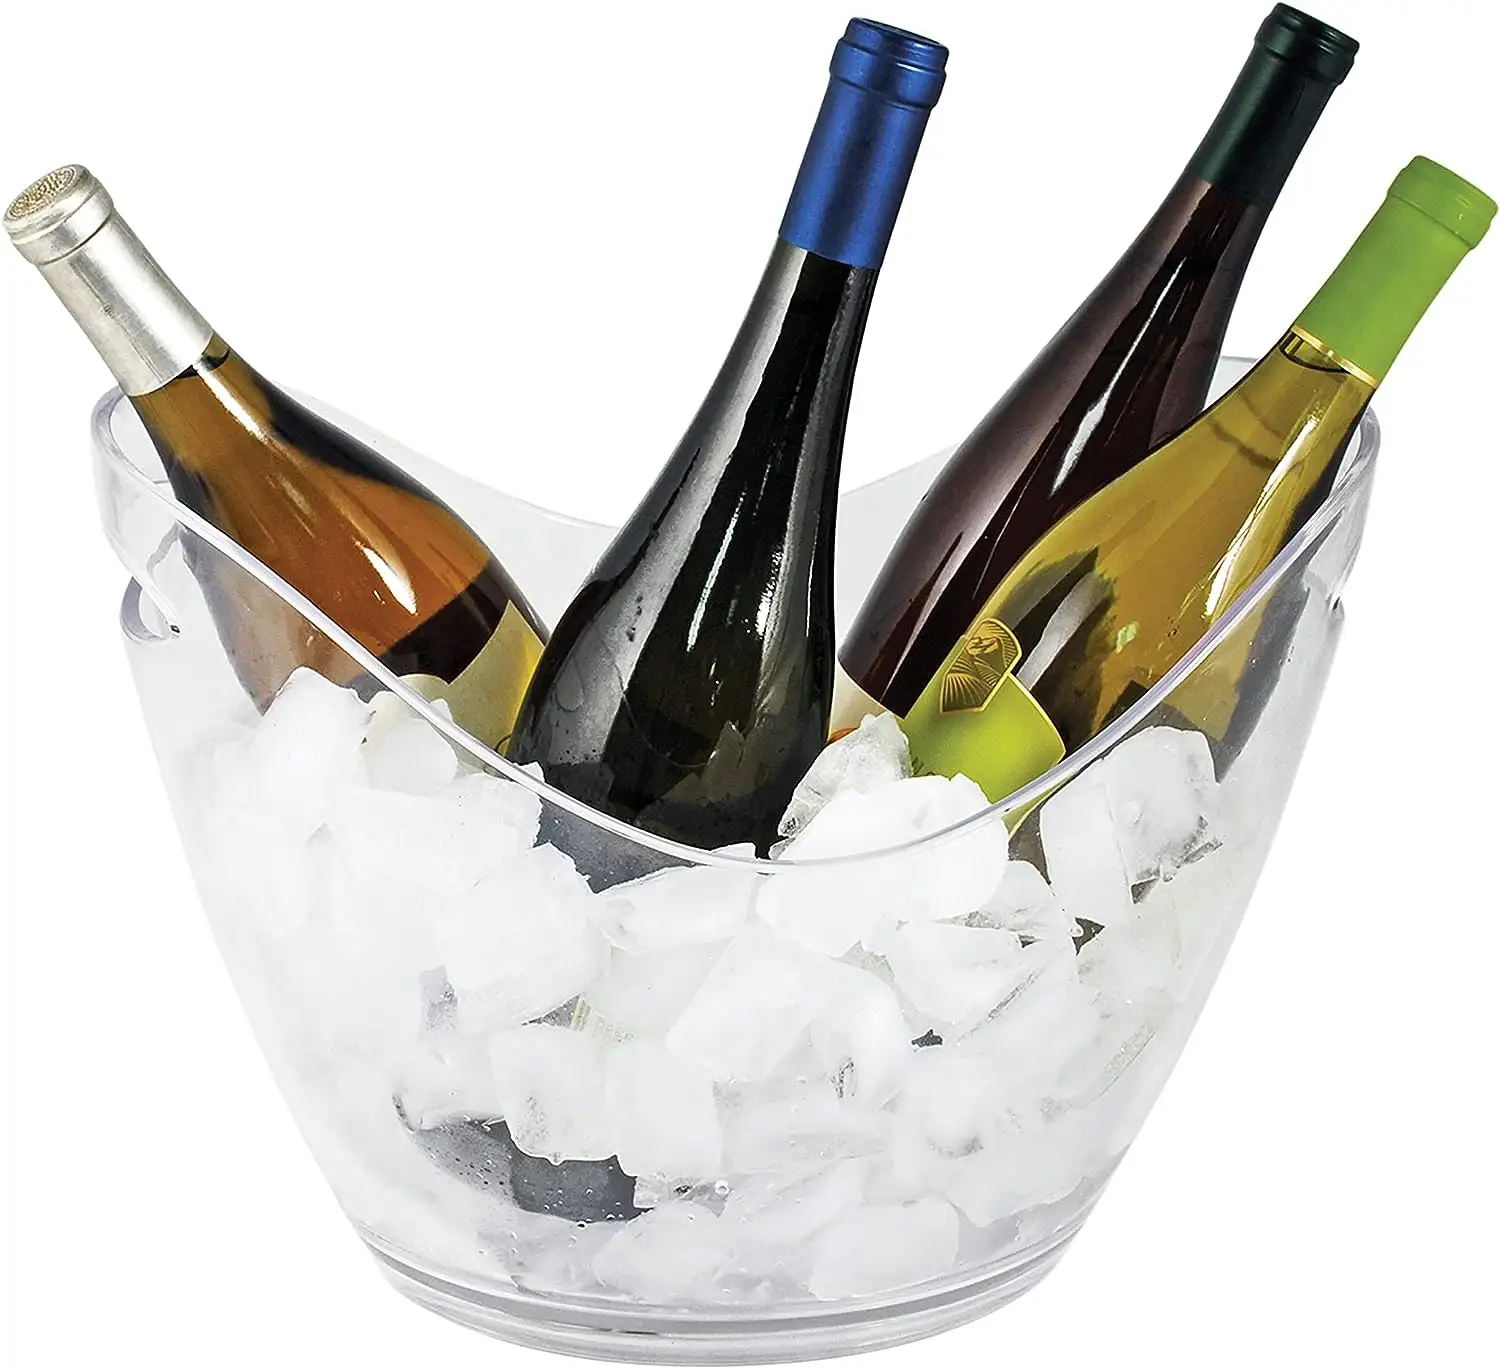 ถังน้ำแข็งใสสำหรับปาร์ตี้ถังใส่น้ำแข็งทำจากอะคริลิคใส่เครื่องดื่มแชมเปญไวน์เบียร์โซดา